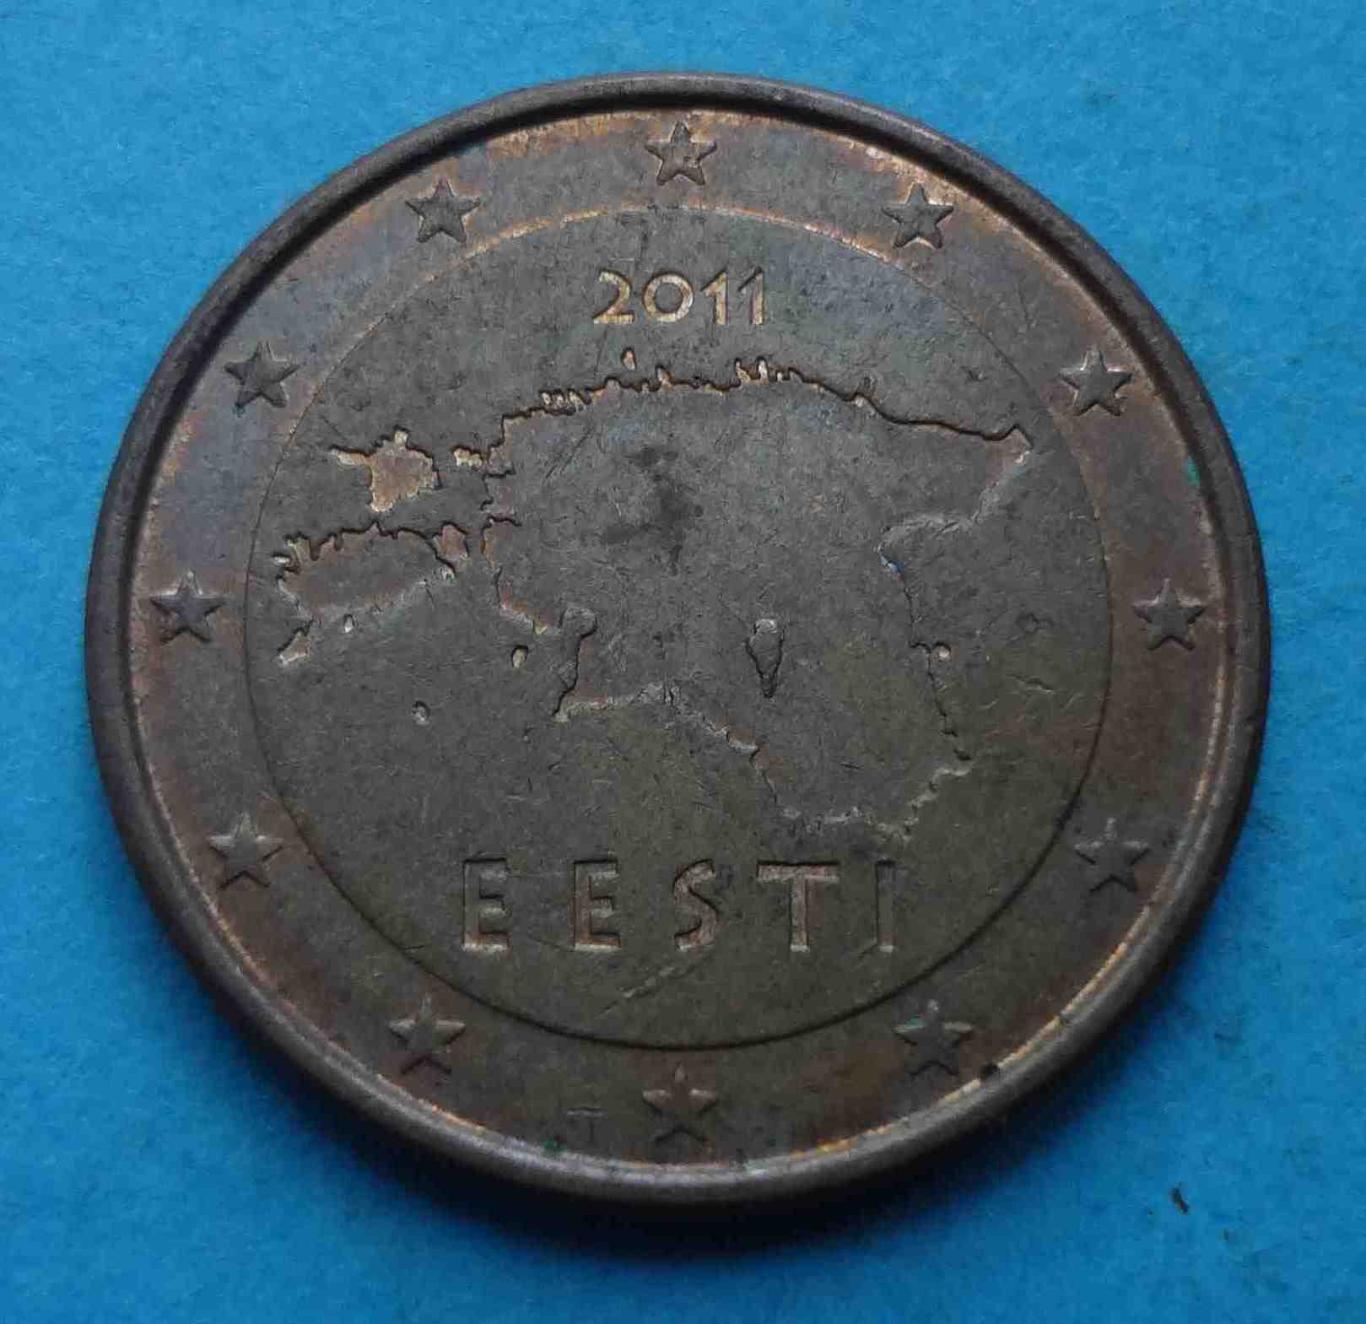 5 Евро центов 2011 года Эстония (36)